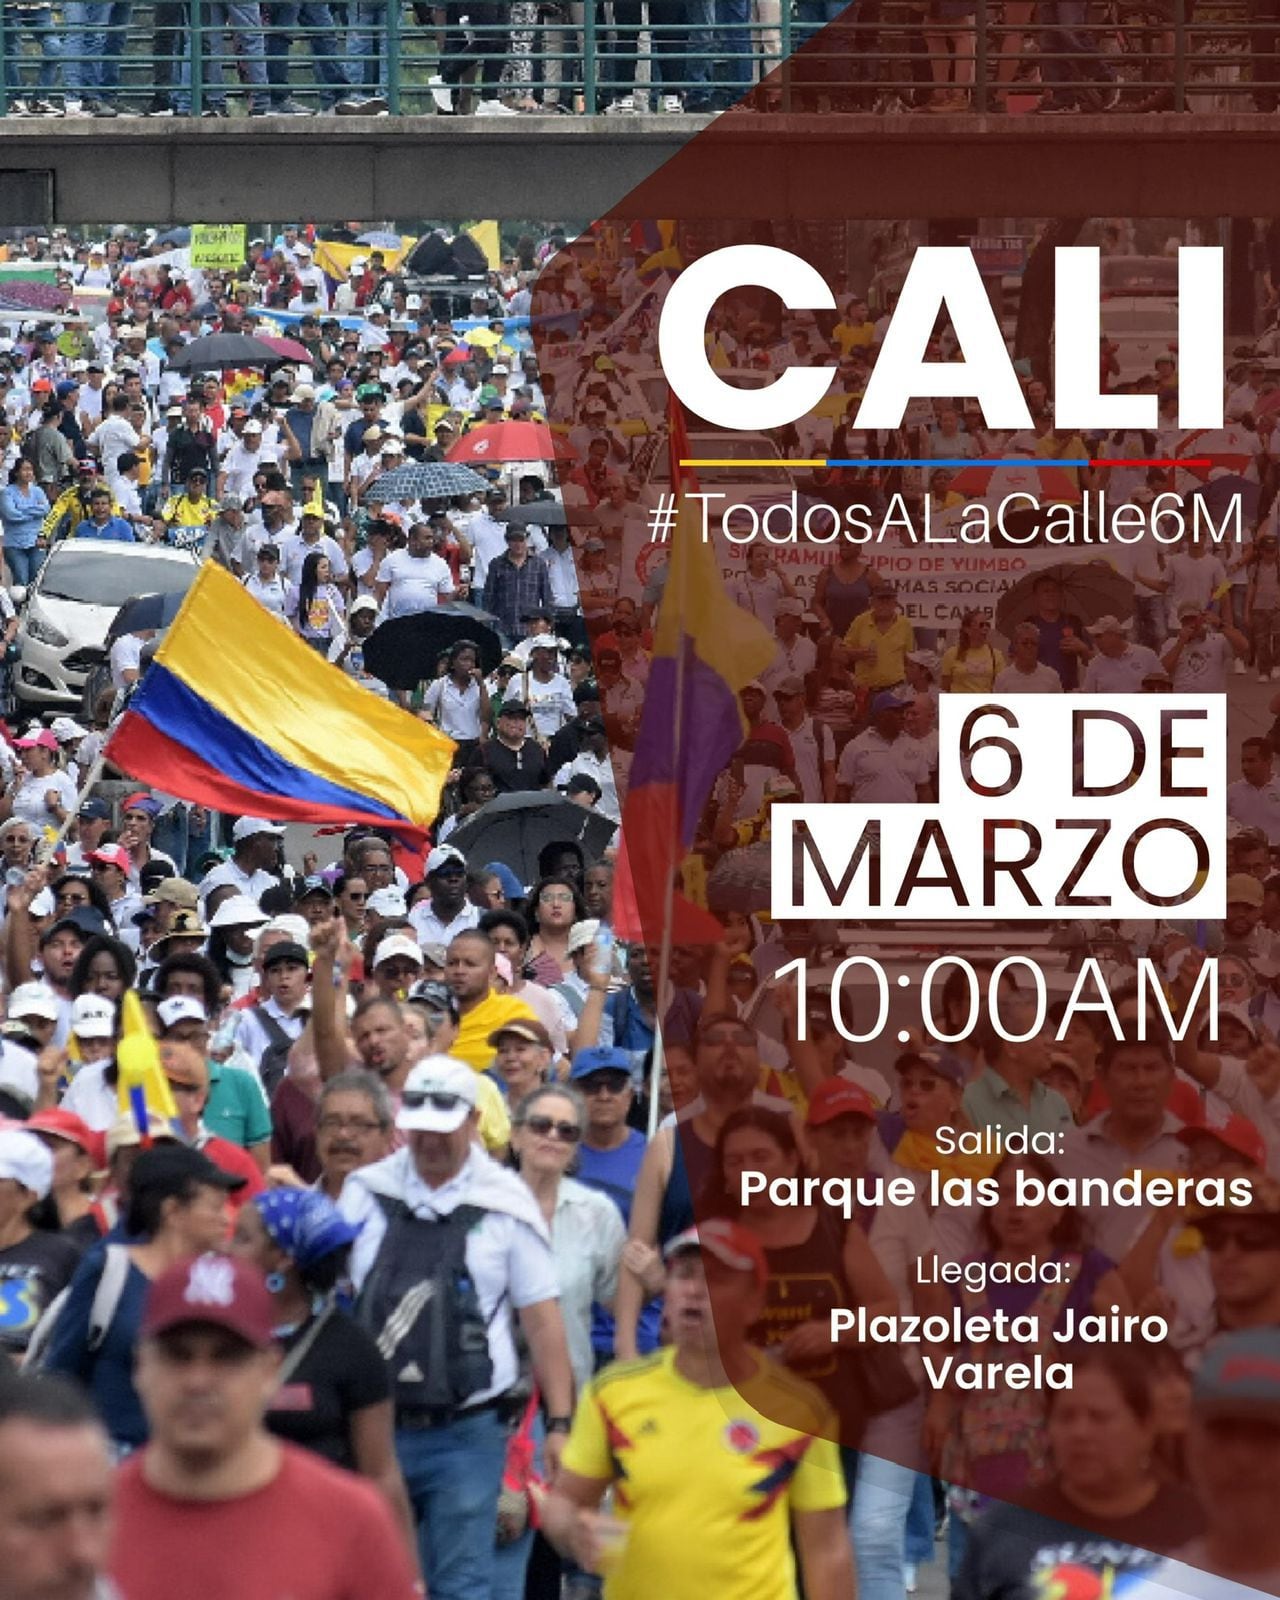 La marcha de este miércoles en Cali saldrá a las 10:00 de la mañana desde el Parque de las Banderas y concluirá en la Plazoleta Jairo Varela.